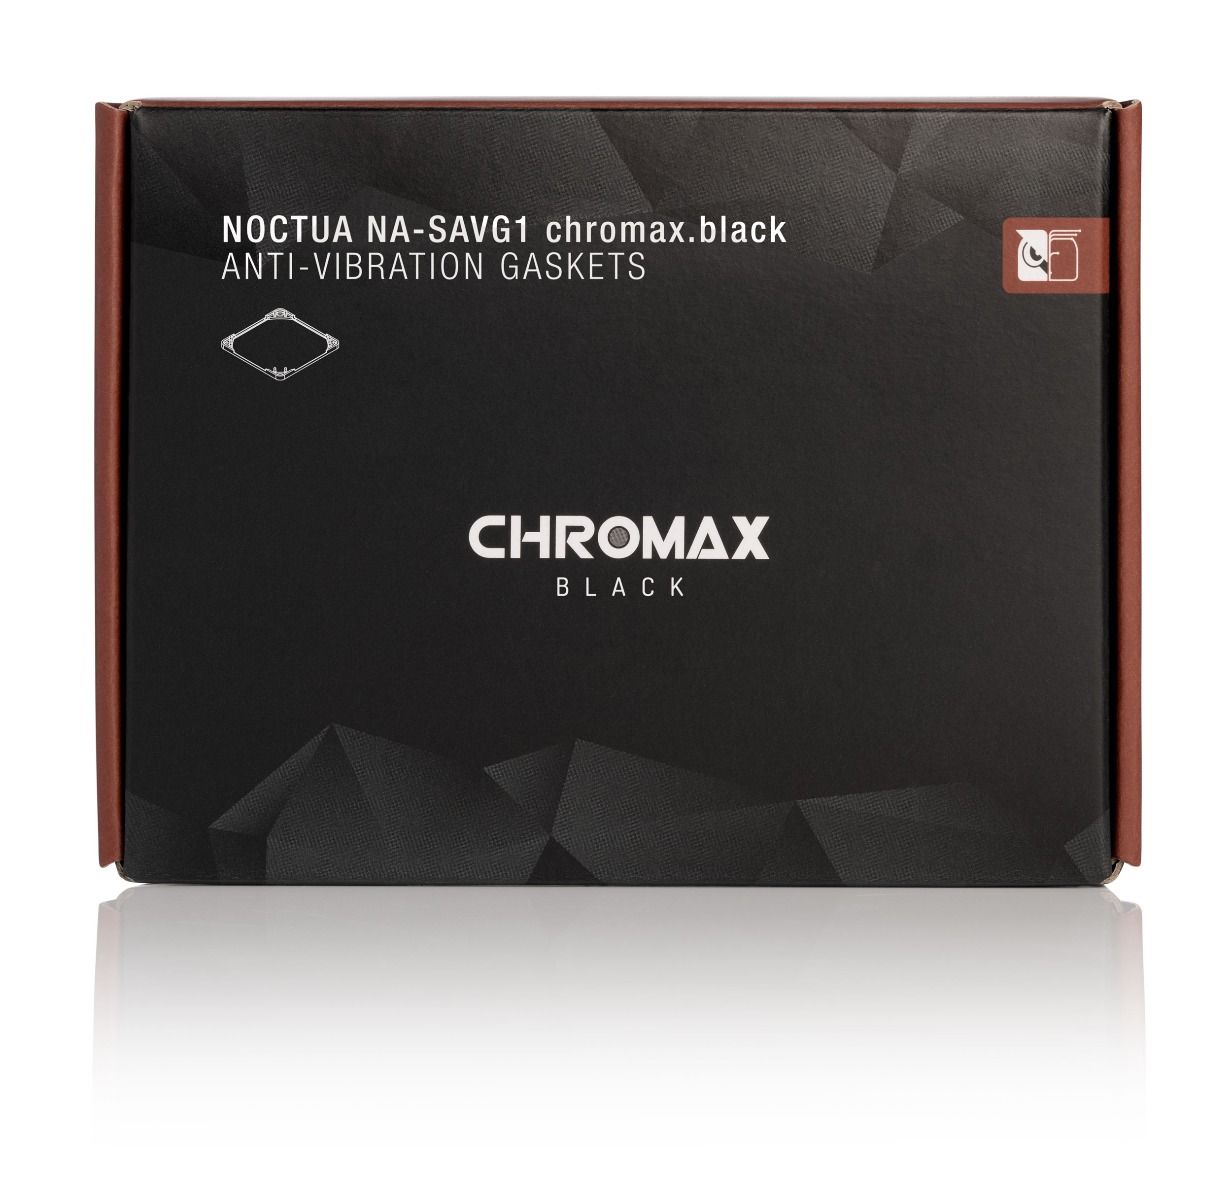 Ventilátor kiegészítő NOCTUA NA-SAVG1 chromax.black vibráció csökkentő 12cm